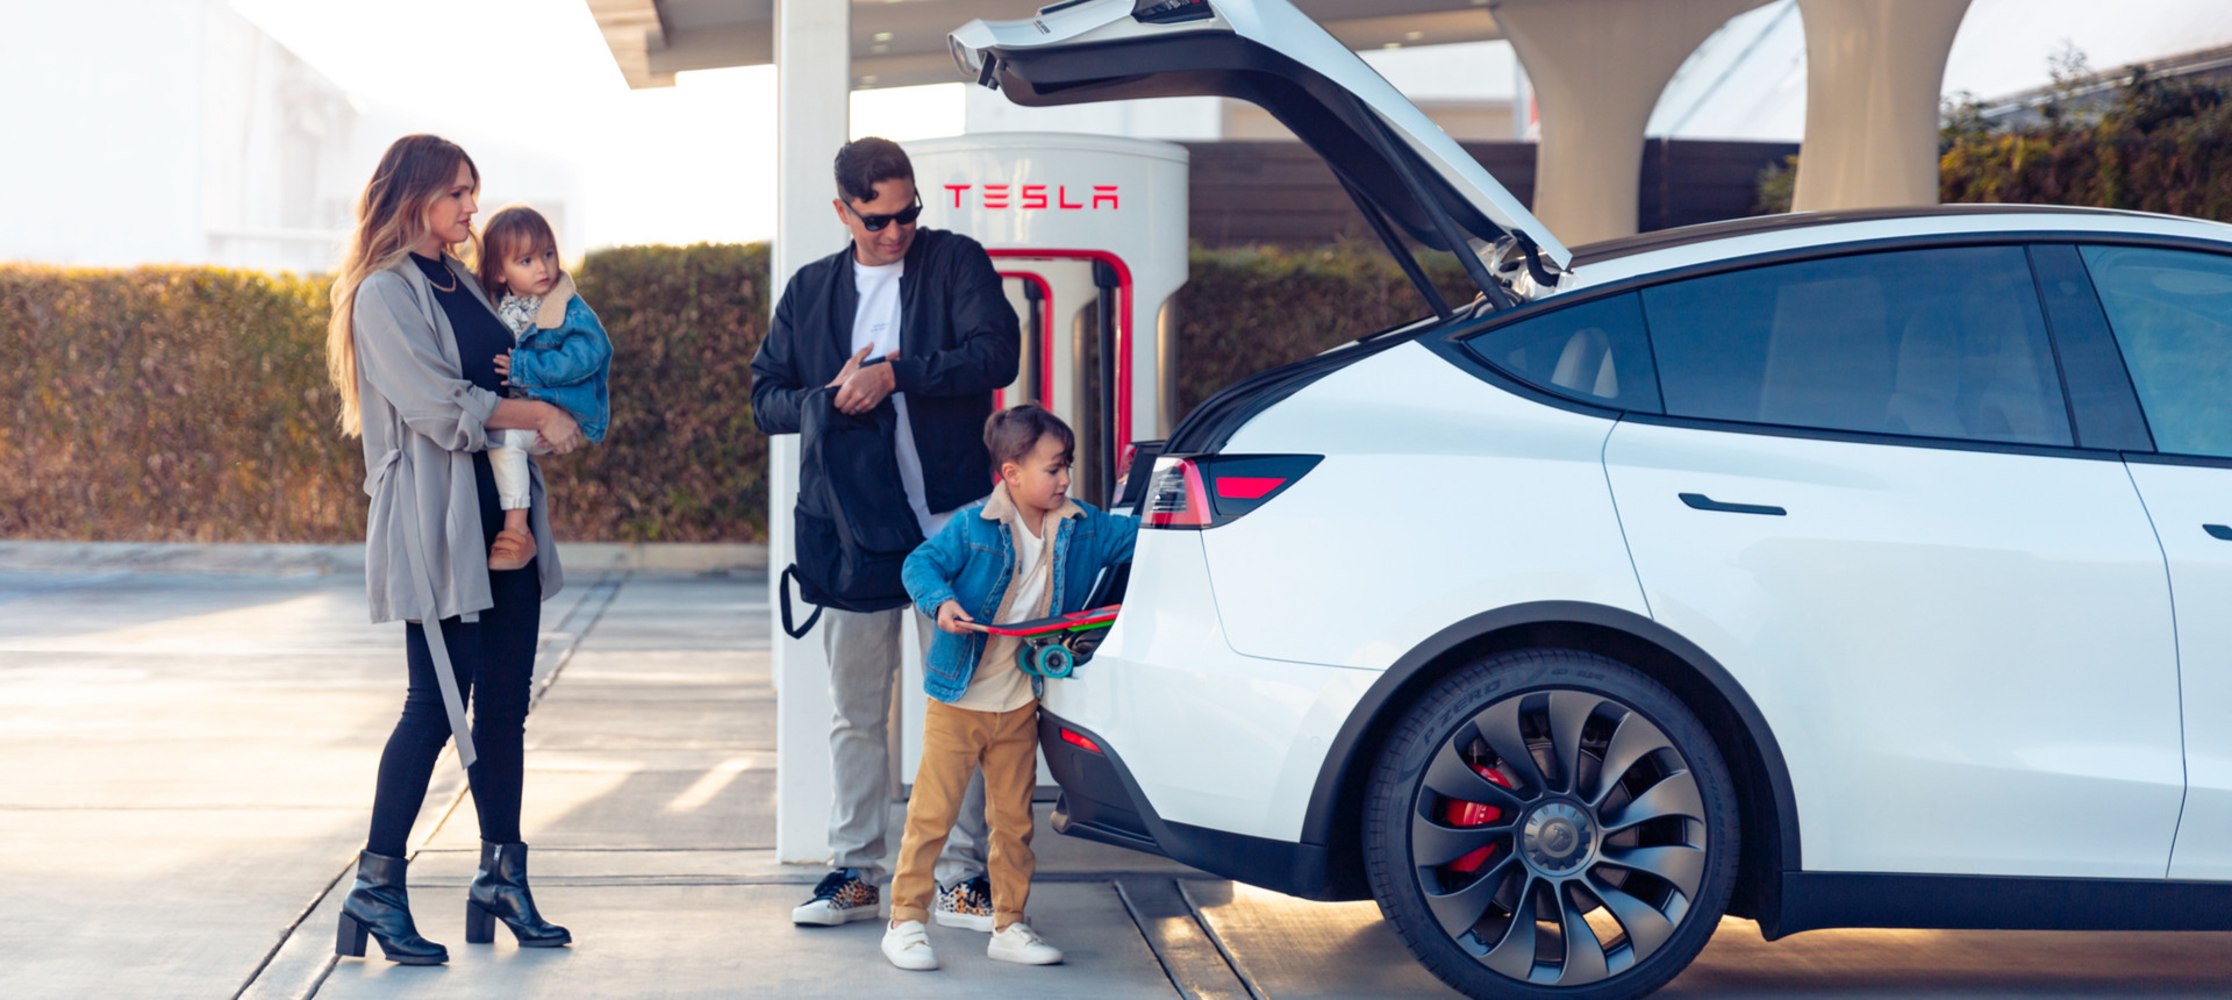 Rodina nabíjející společně vůz Tesla. 